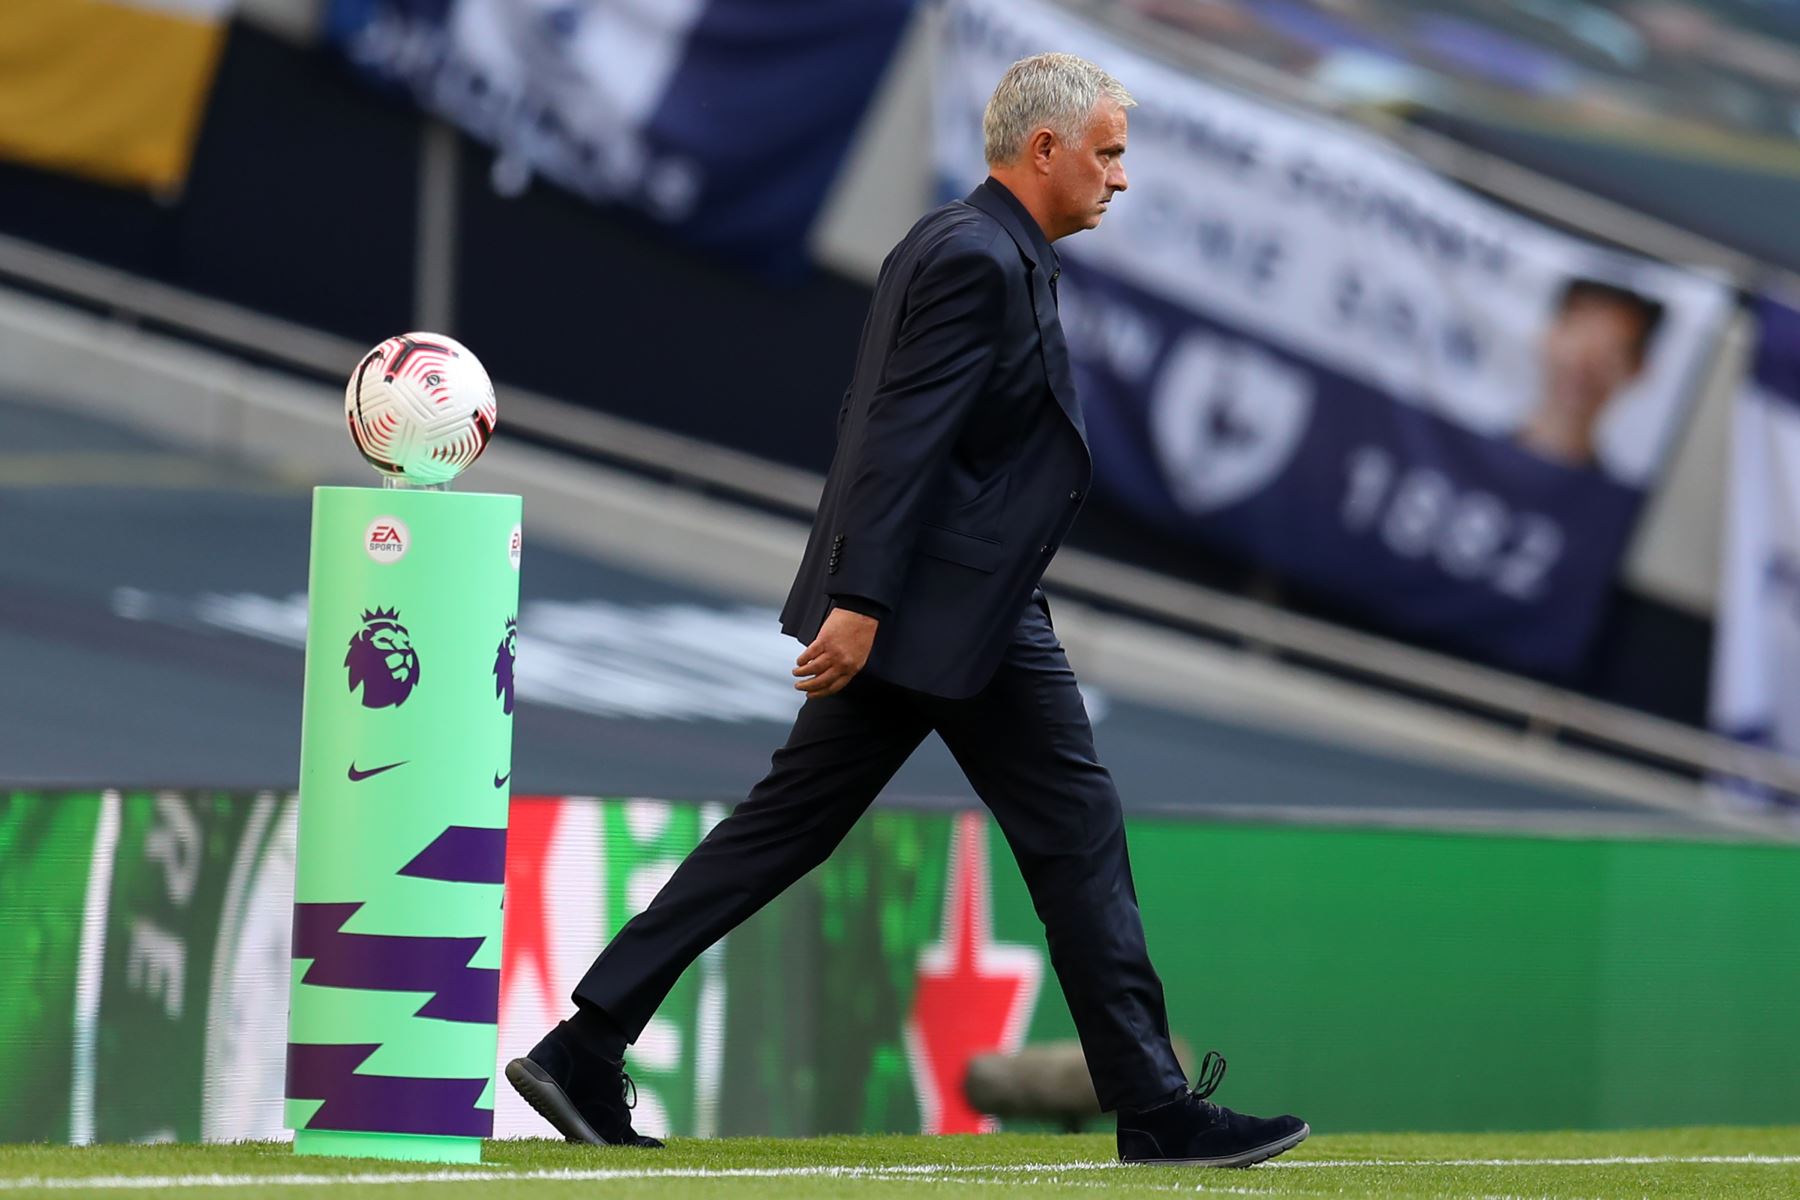 El entrenador portugués del Tottenham Hotspur, José Mourinho, sale al campo antes del partido de fútbol de la Premier League. Foto: AFP